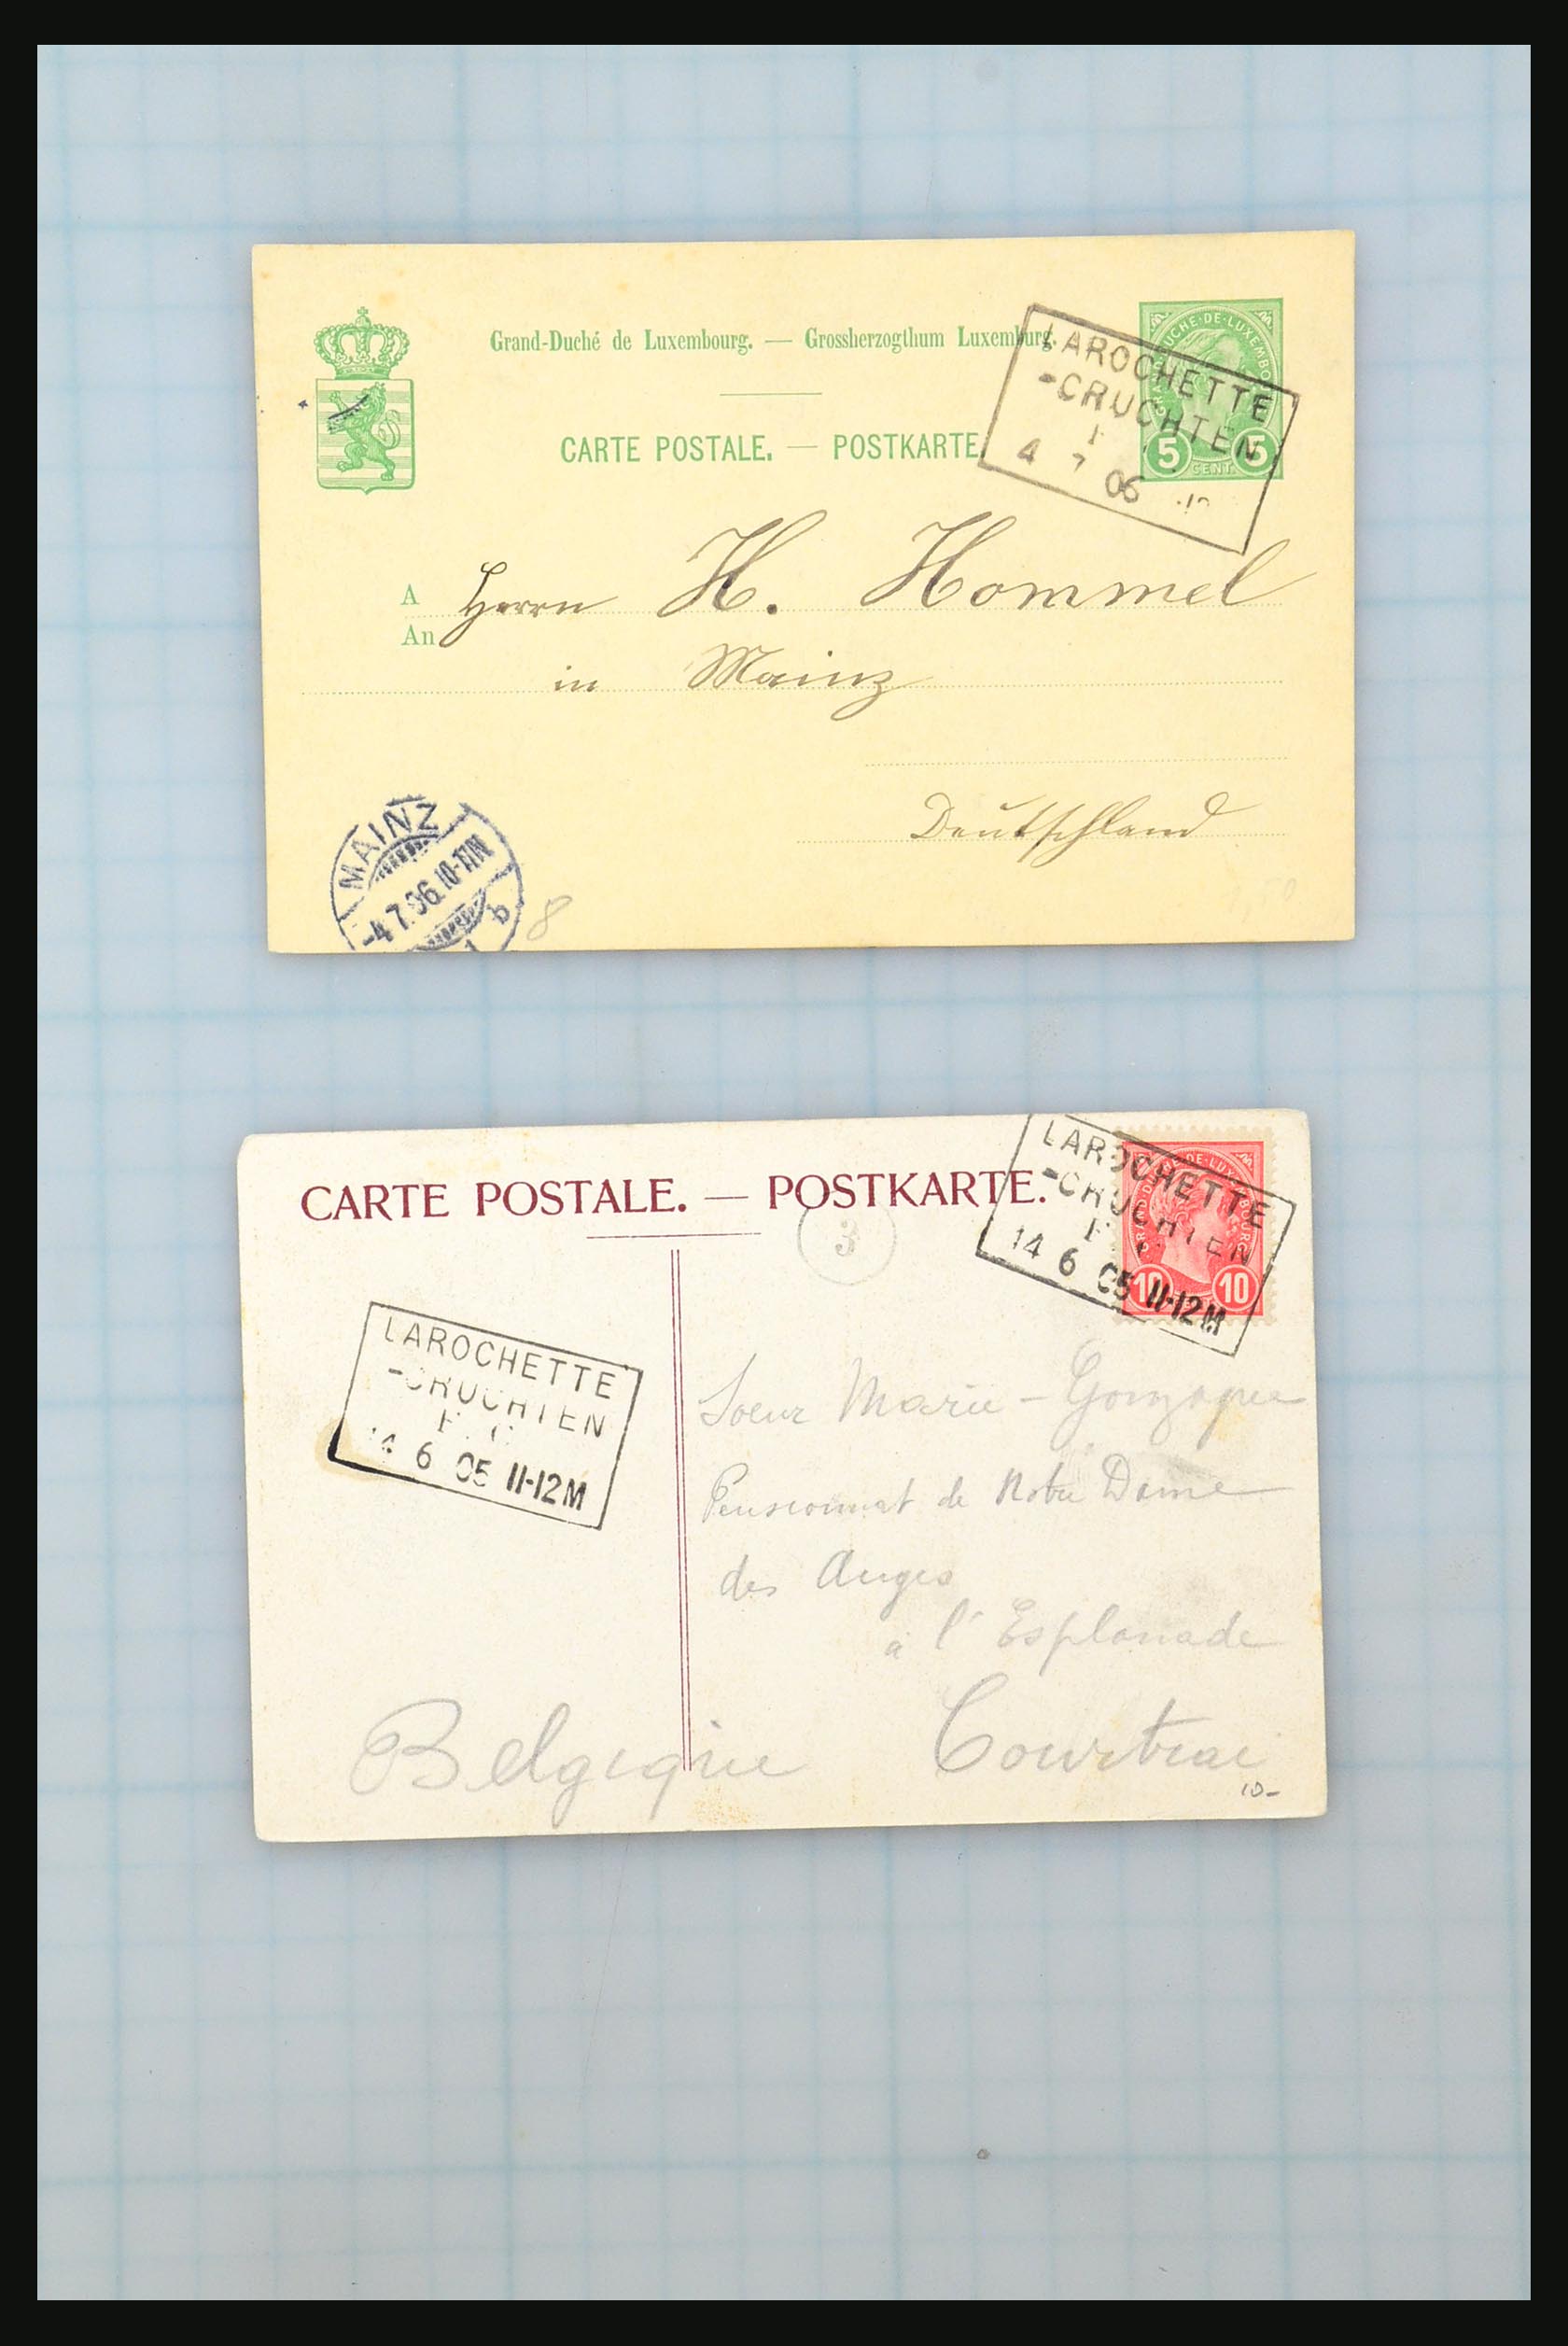 31358 083 - 31358 Portugal/Luxemburg/Griekenland brieven 1880-1960.